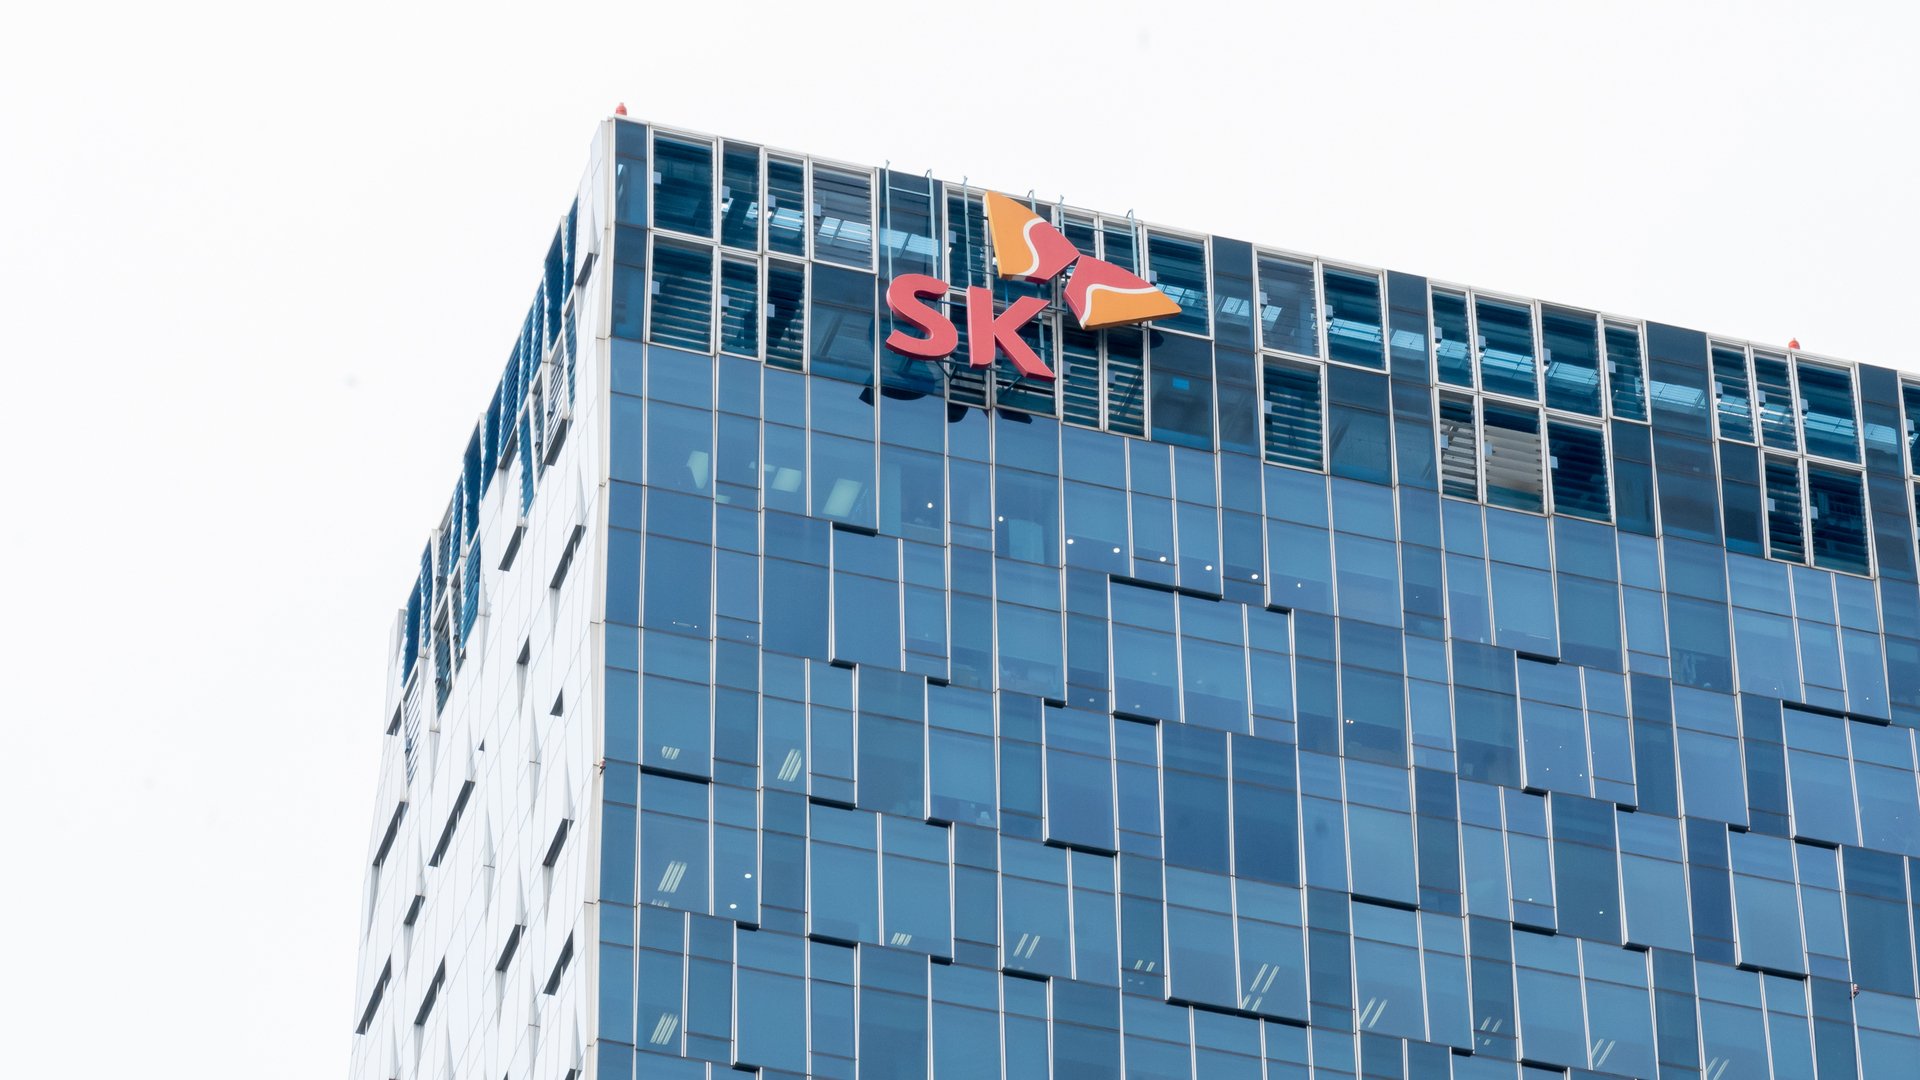 güney koreli teknoloji şirketi sk square, blok zinciri yatırımlarını artıracak